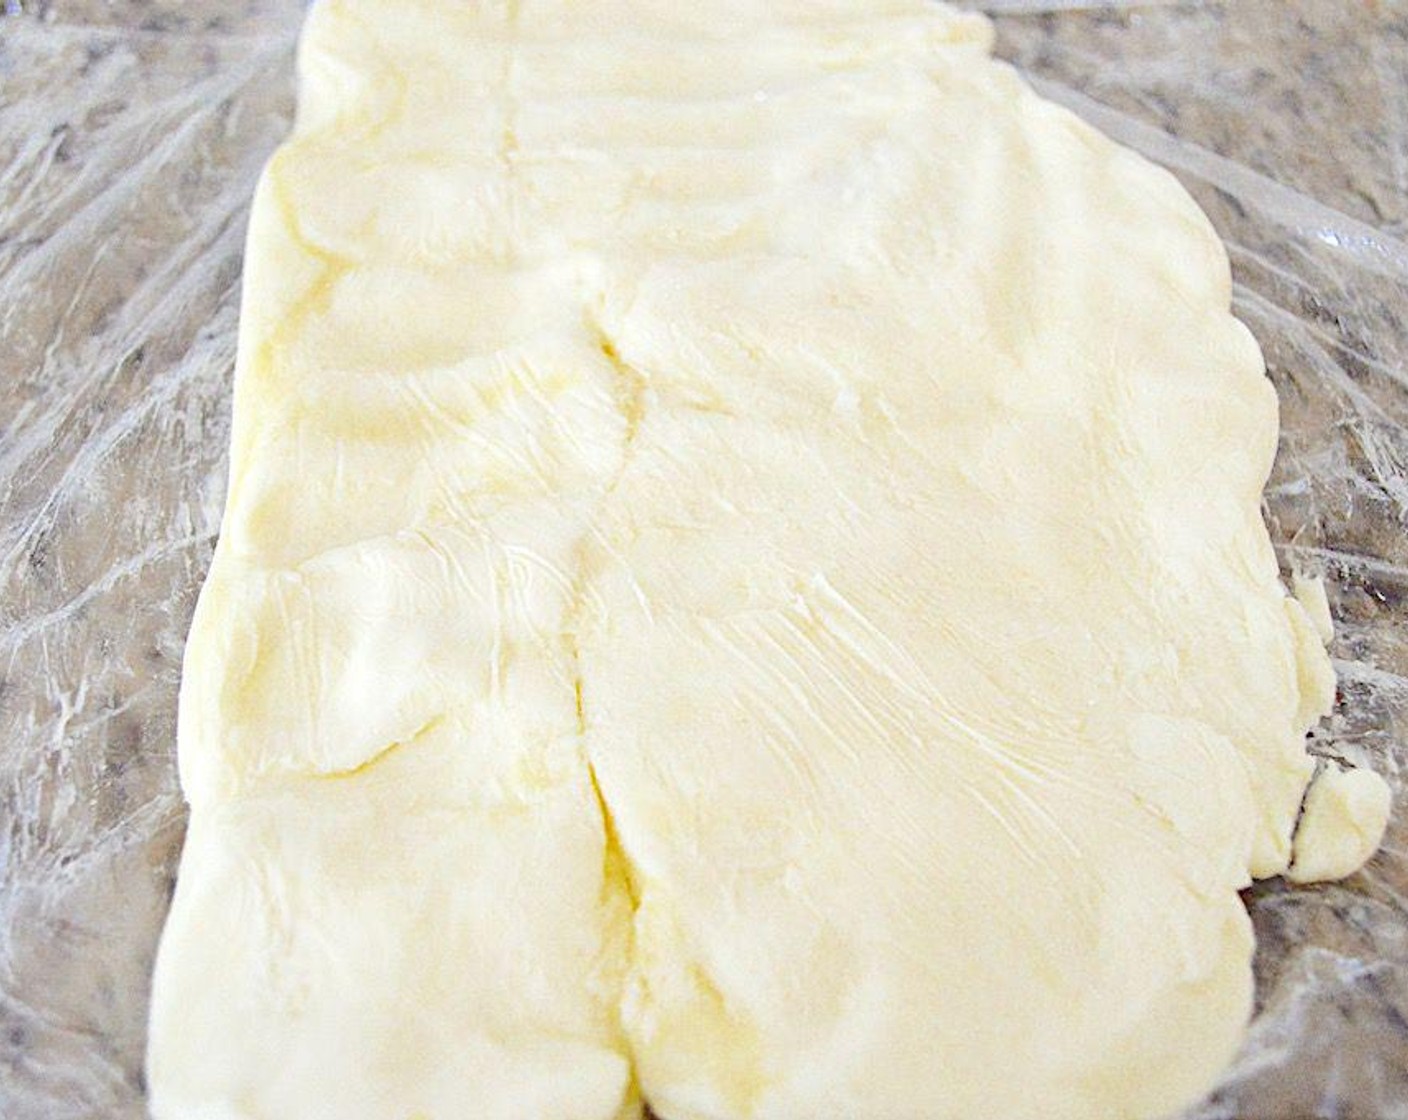 Schritt 5 Sobald der Teig fertig ist, wird die Butterplatte geformt.
Ein grosses Stück Frischhaltefolie auslegen und leicht bemehlen. Die weiche Butter (300 g) auf eine Hälfte davon legen und auch die Oberseite der Butter mit Mehl bestäuben. Die andere Hälfte der Folie darüberlegen und leicht mit den Händen zu einem dünnen Rechteck zwischen der Folie drücken. In den Kühlschrank legen, damit es wieder fest wird.